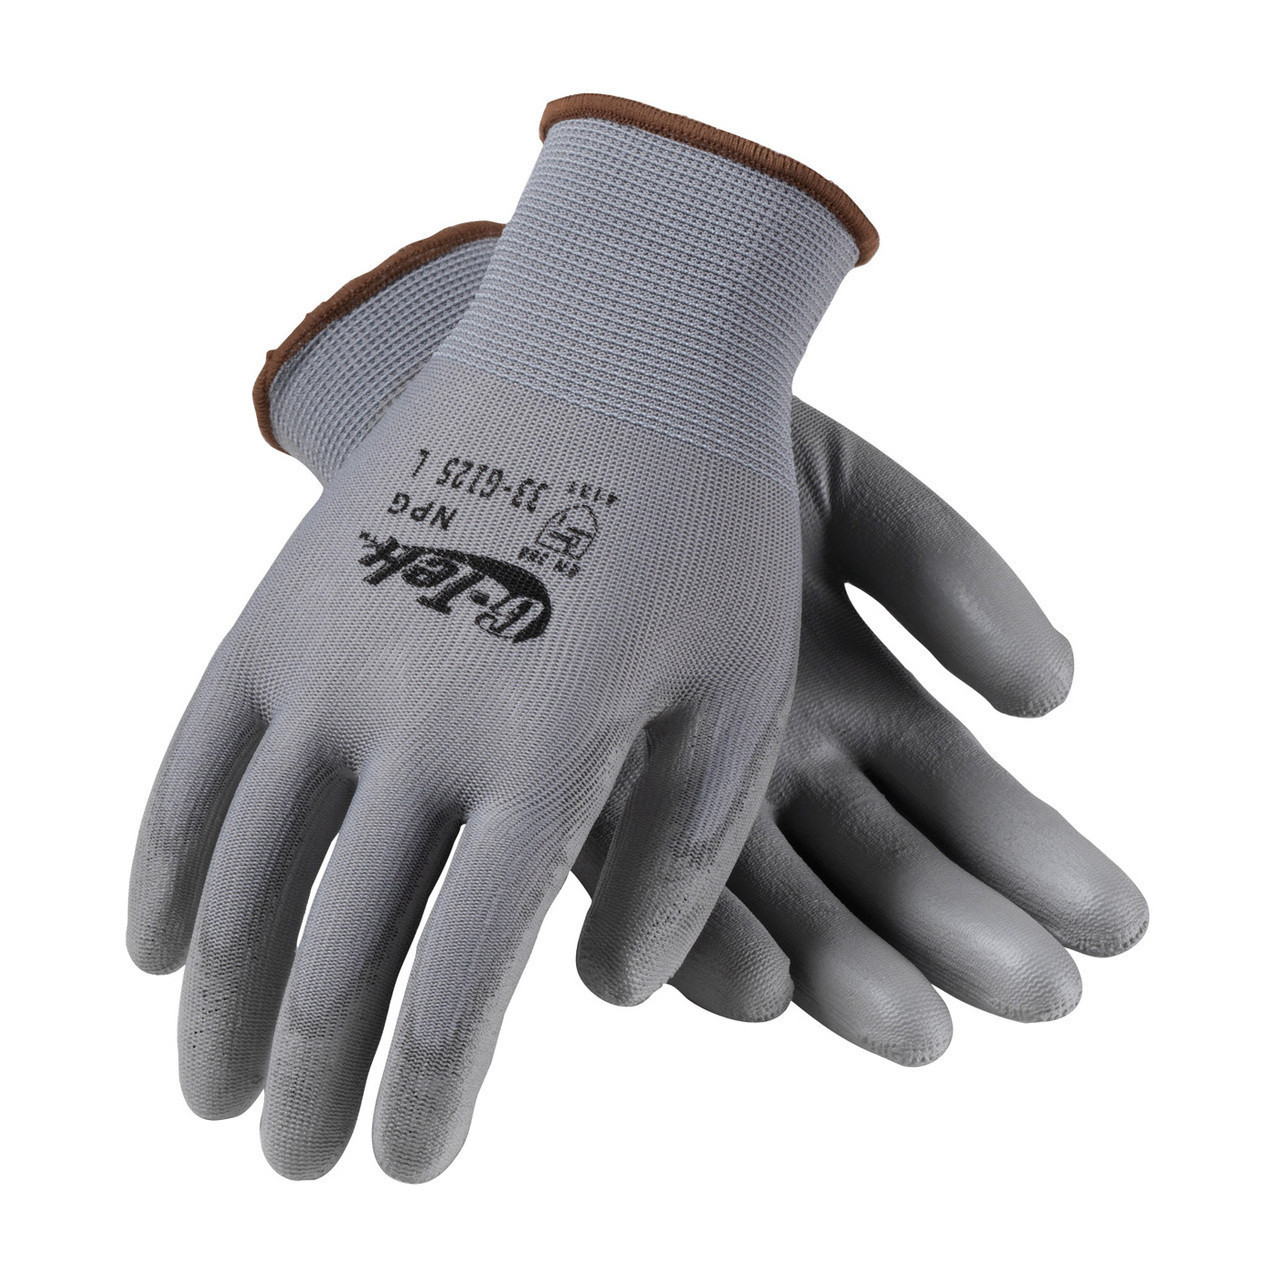 polyurethane coated nylon gloves